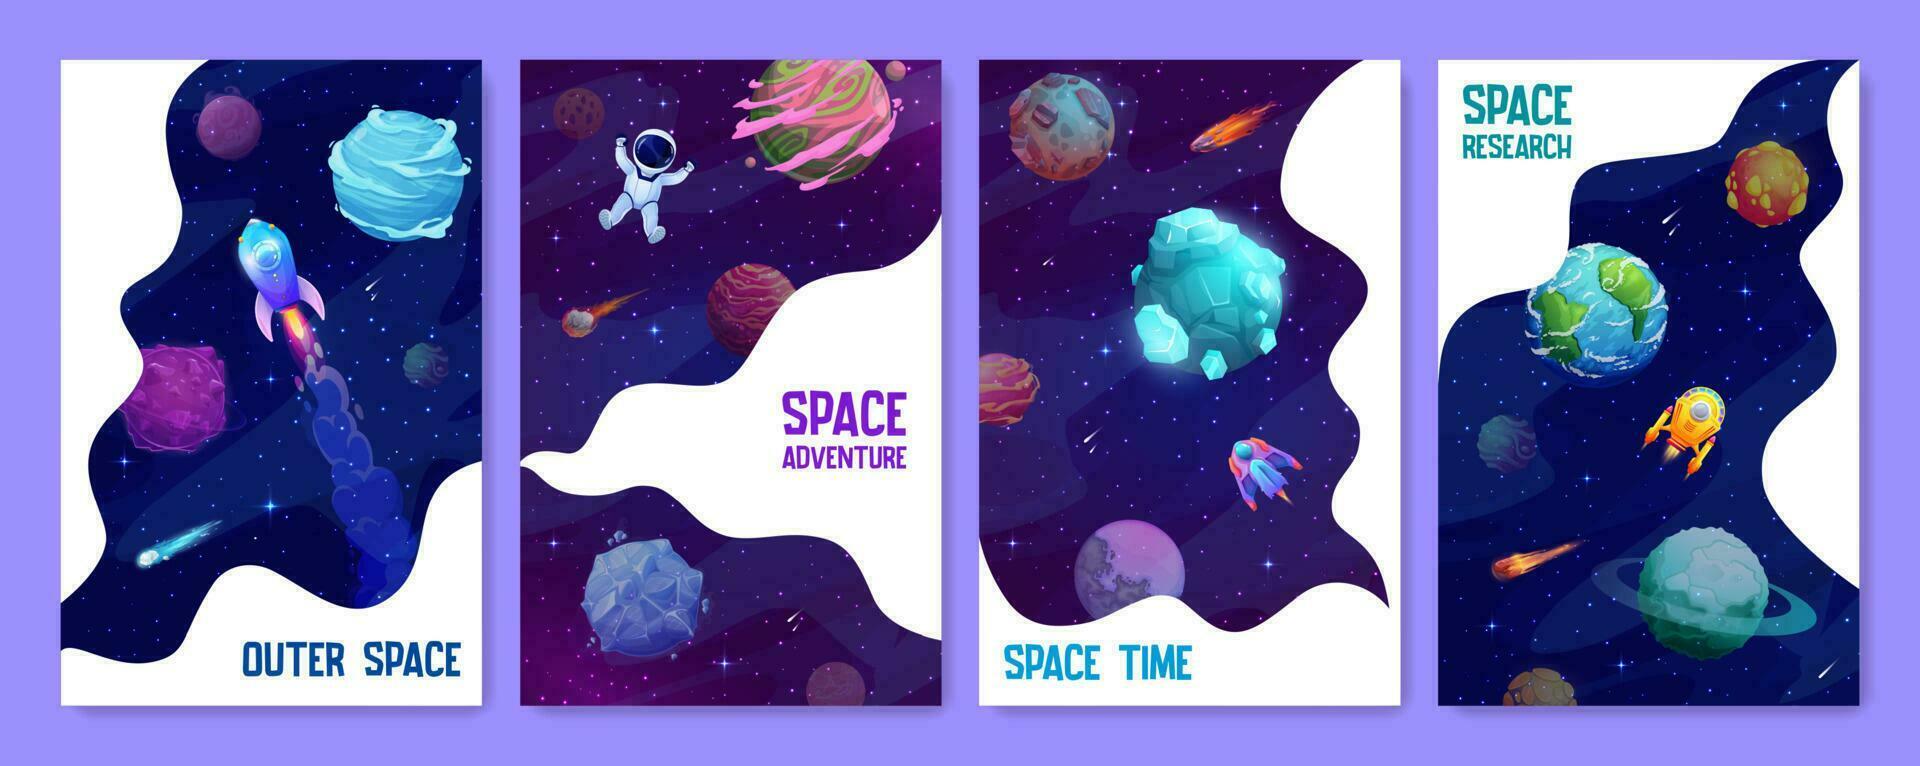 espacio aterrizaje páginas, estrellado galaxia y planetas vector